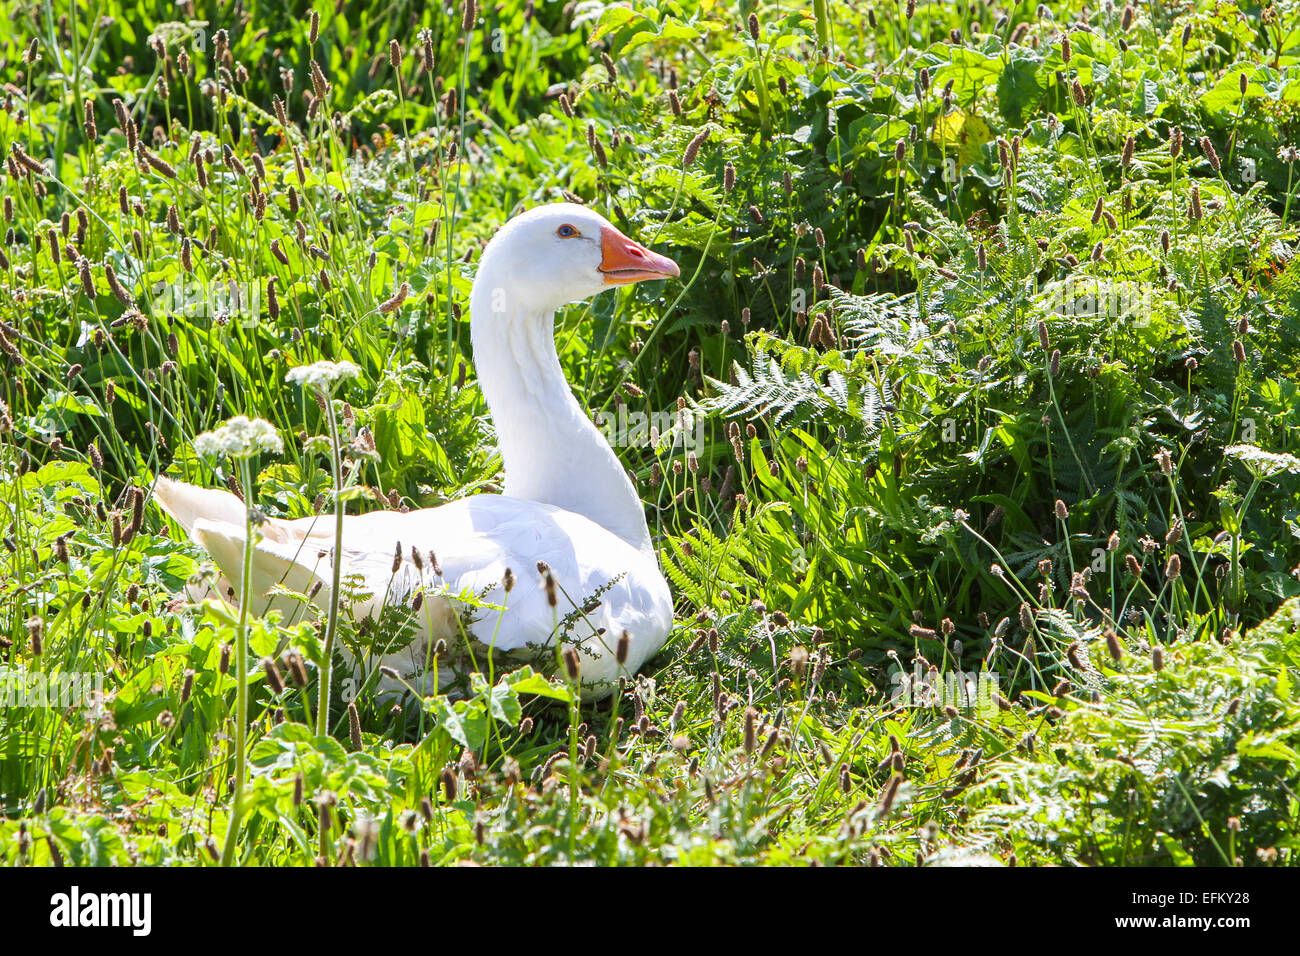 Weiße gans Verschachtelung unter grüne Pflanzen, die Scilly-Inseln, Vereinigtes Königreich Stockfoto